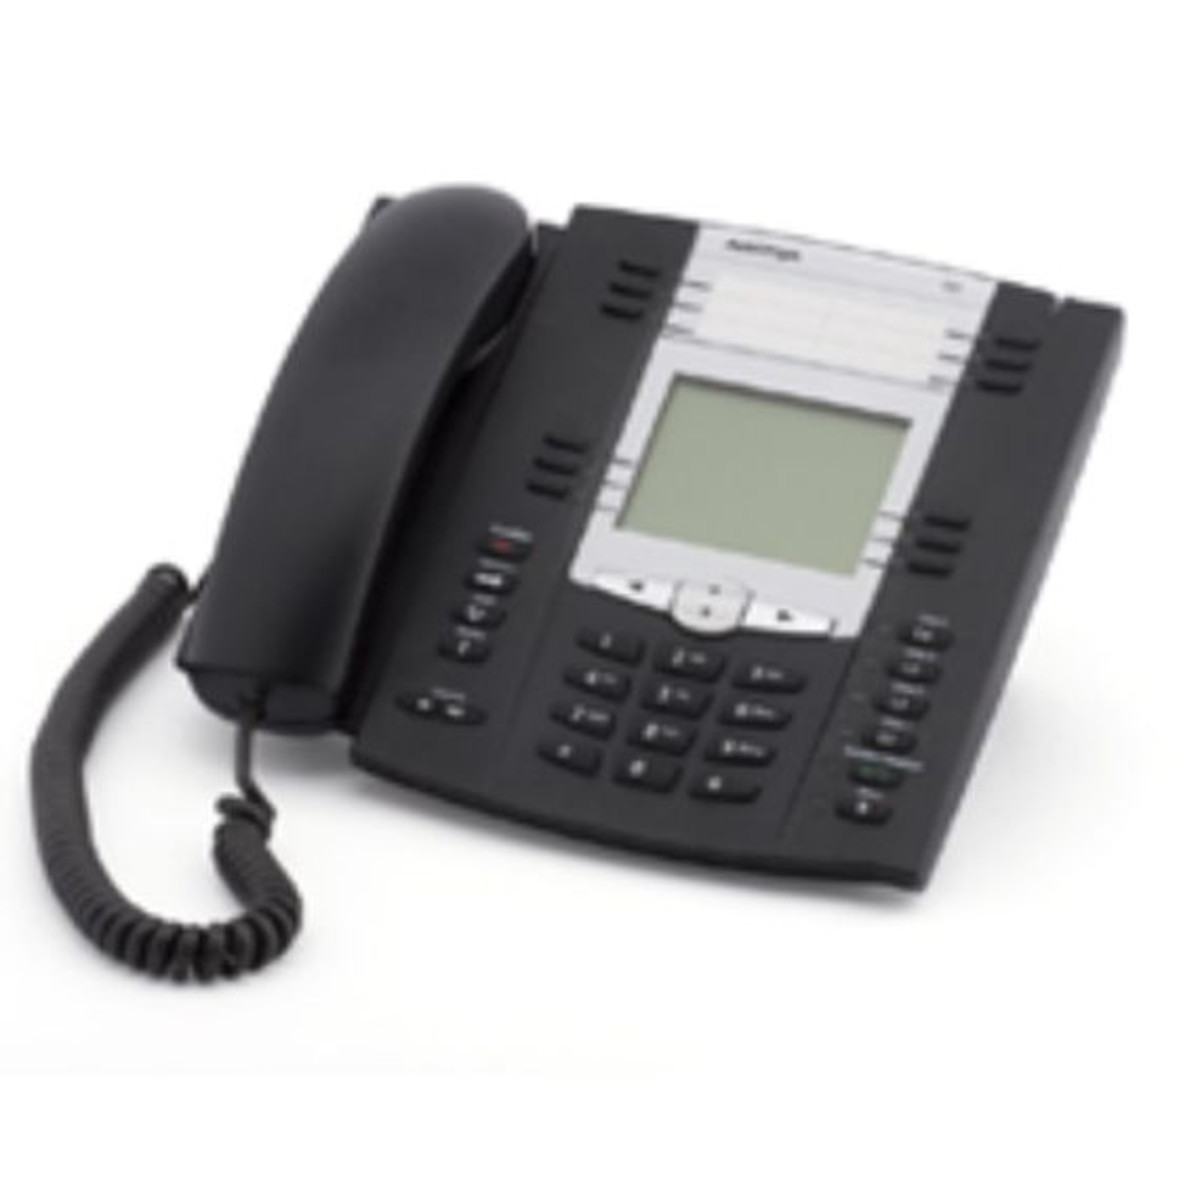 Aastra 55i IP Phone (p/n- ‎A1755-0131-10-01)